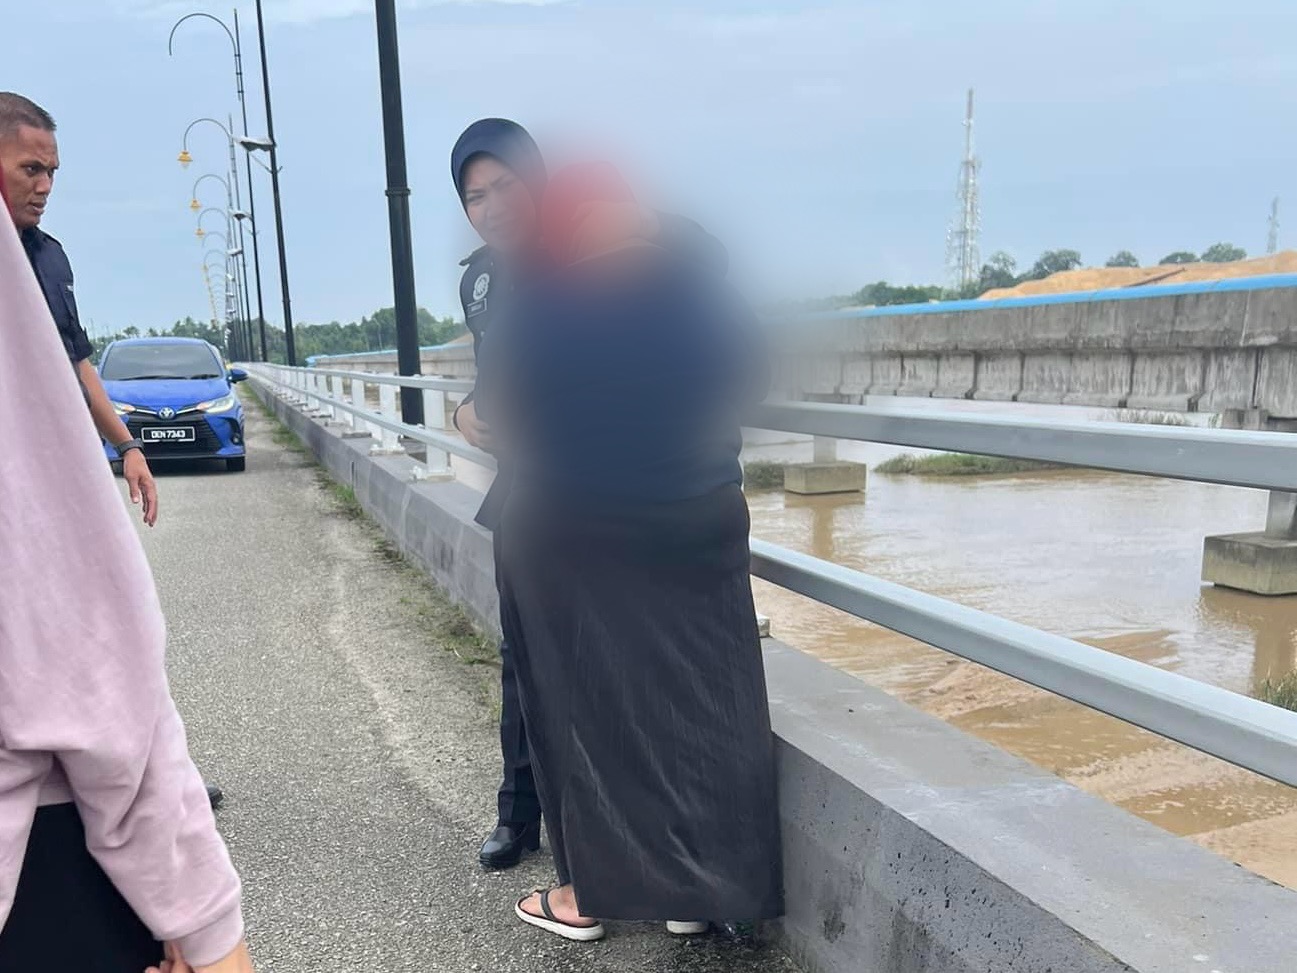 Polis selamatkan wanita kemurungan di Jambatan Sultan Abu Bakar